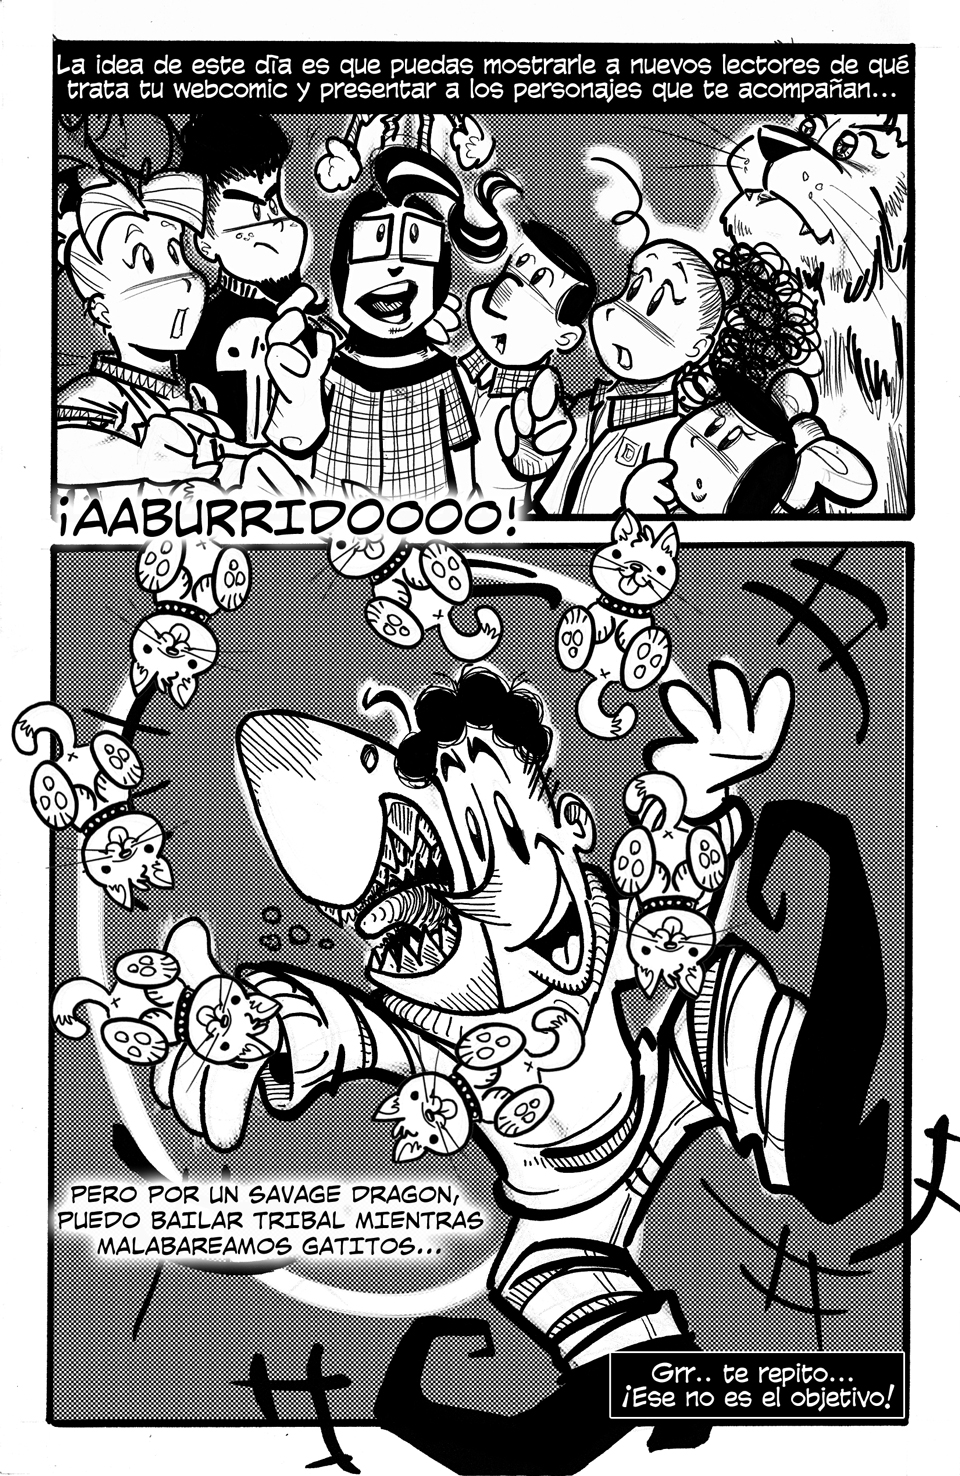 Página 262 | Día del comic gratuito, parte 2